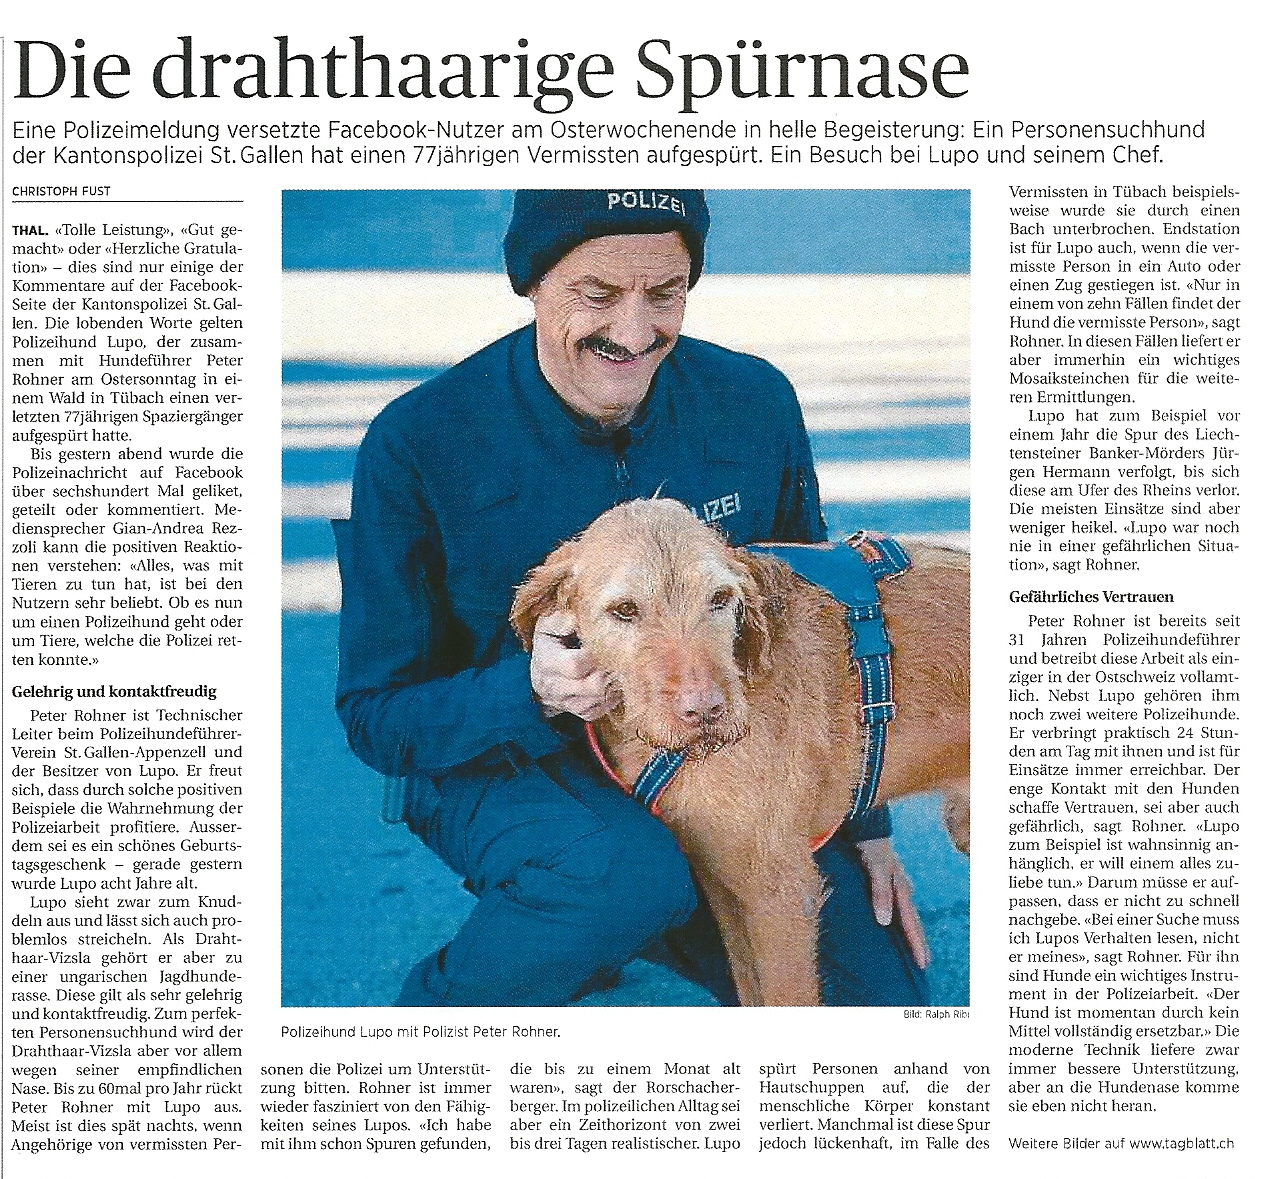 Gute Presse für Peter Rohner und Lupo (Quelle: St. Galler Tagblatt vom 9.4.